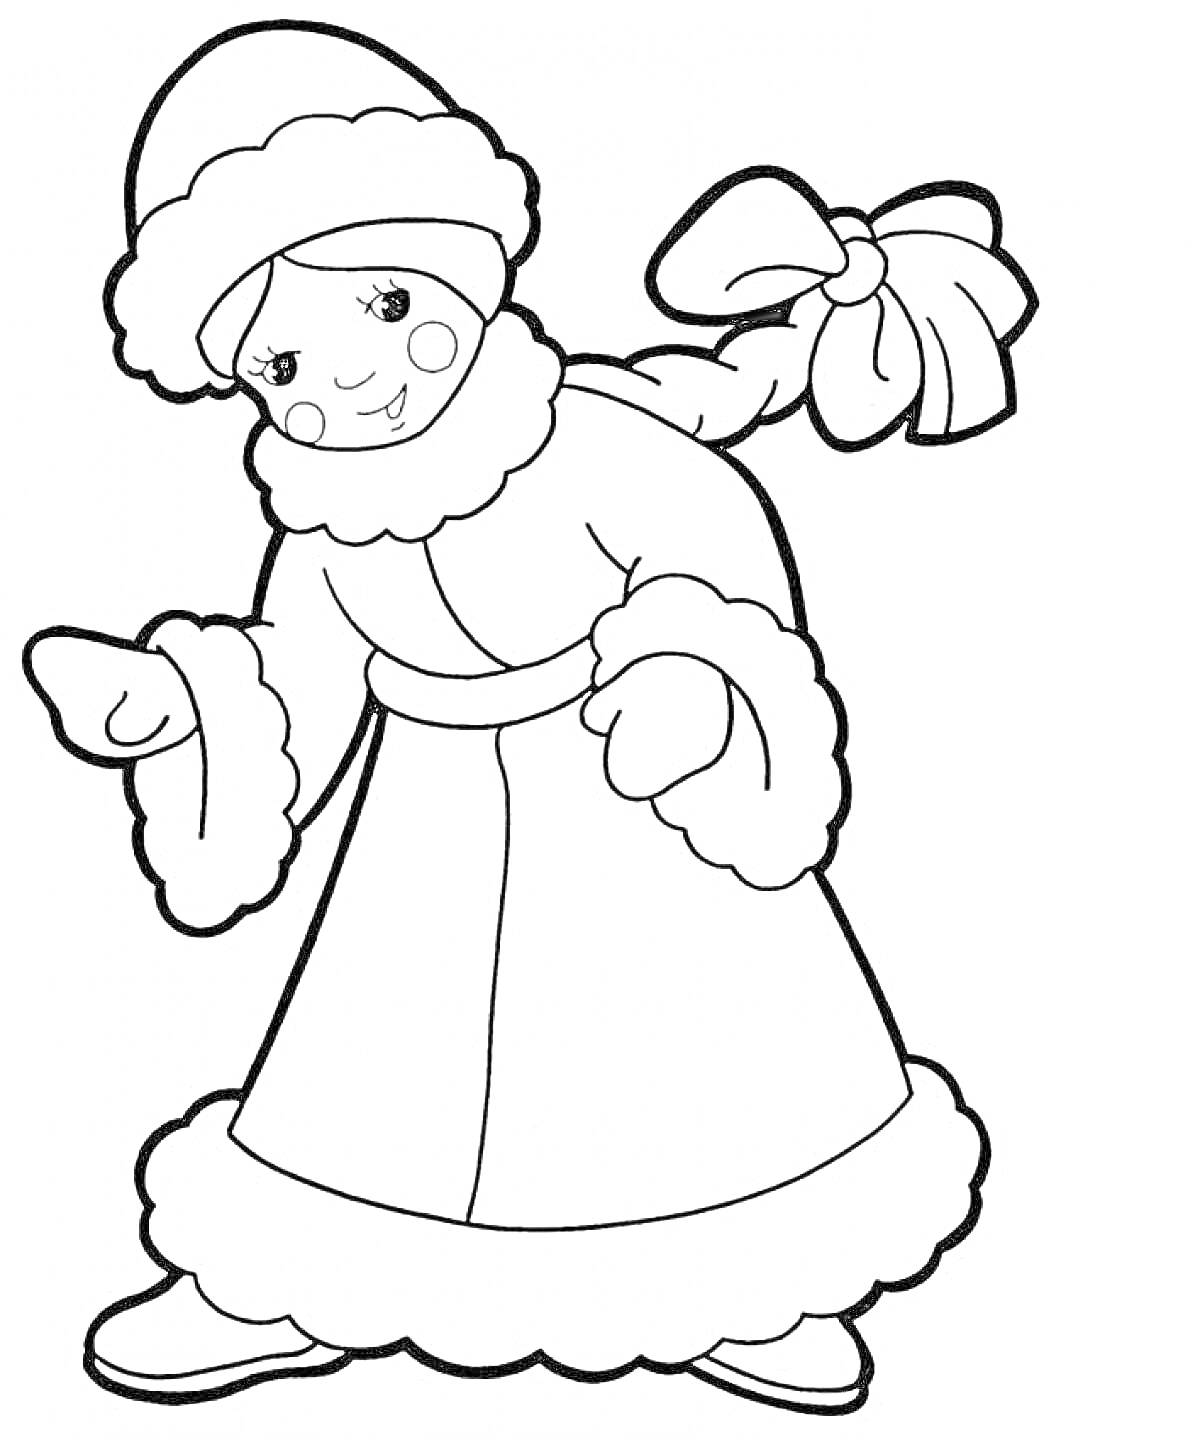 Снегурочка в меховой шапке и длинной шубе с косой с бантом